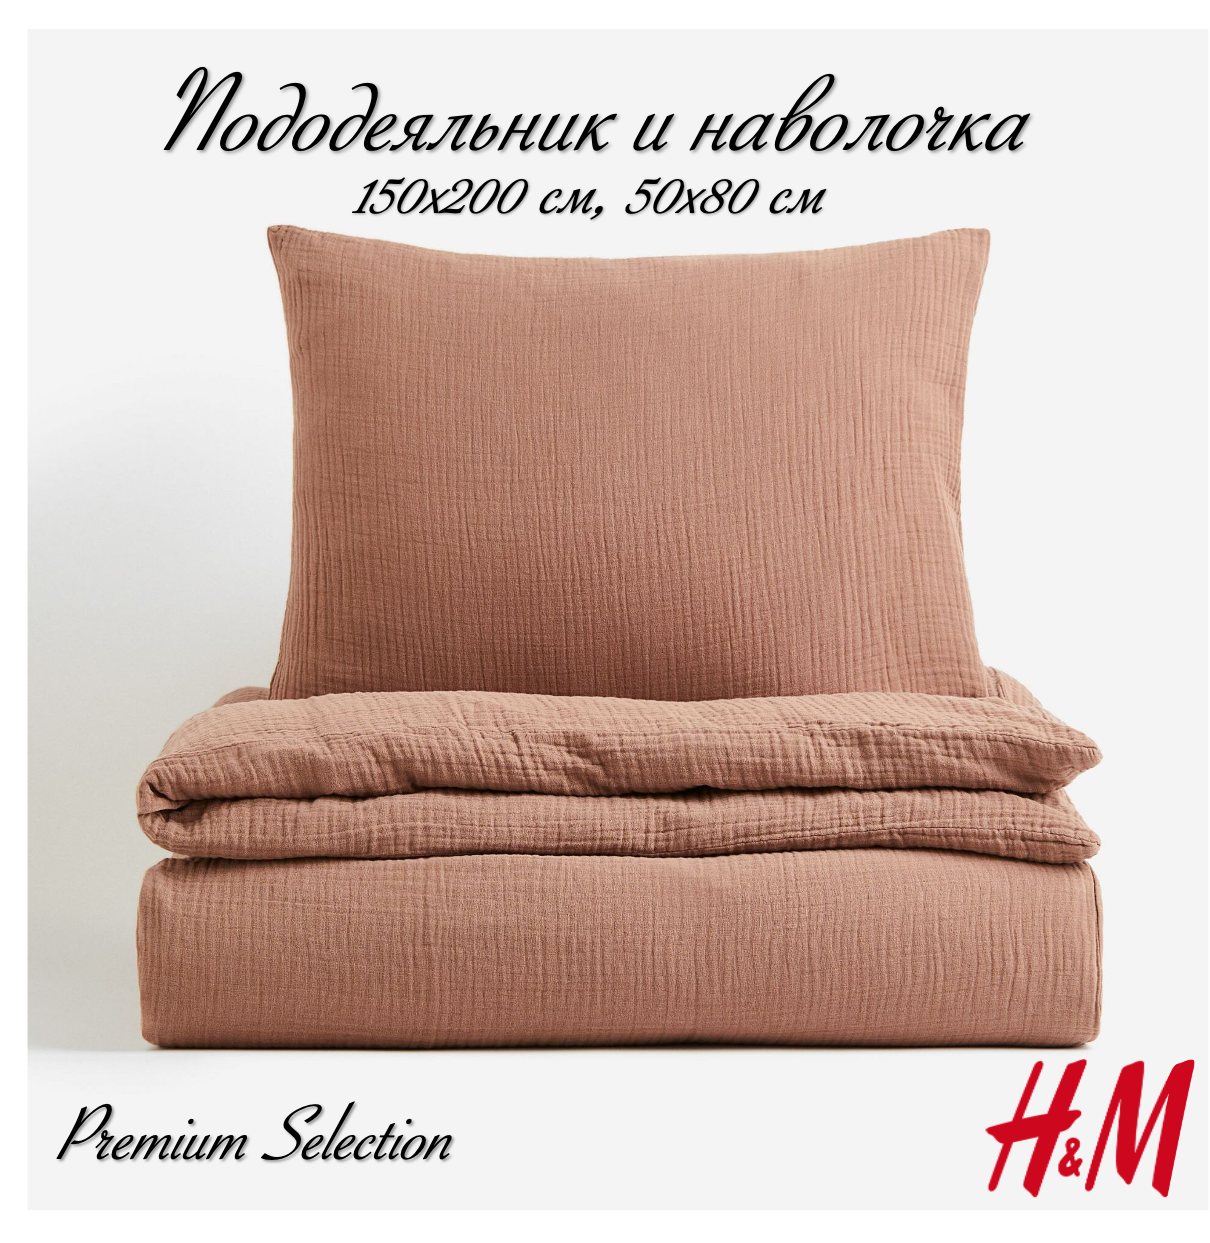 Комплект постельного белья H&M из муслина, пододеяльник и наволочка, 150х200, светло-коричневый